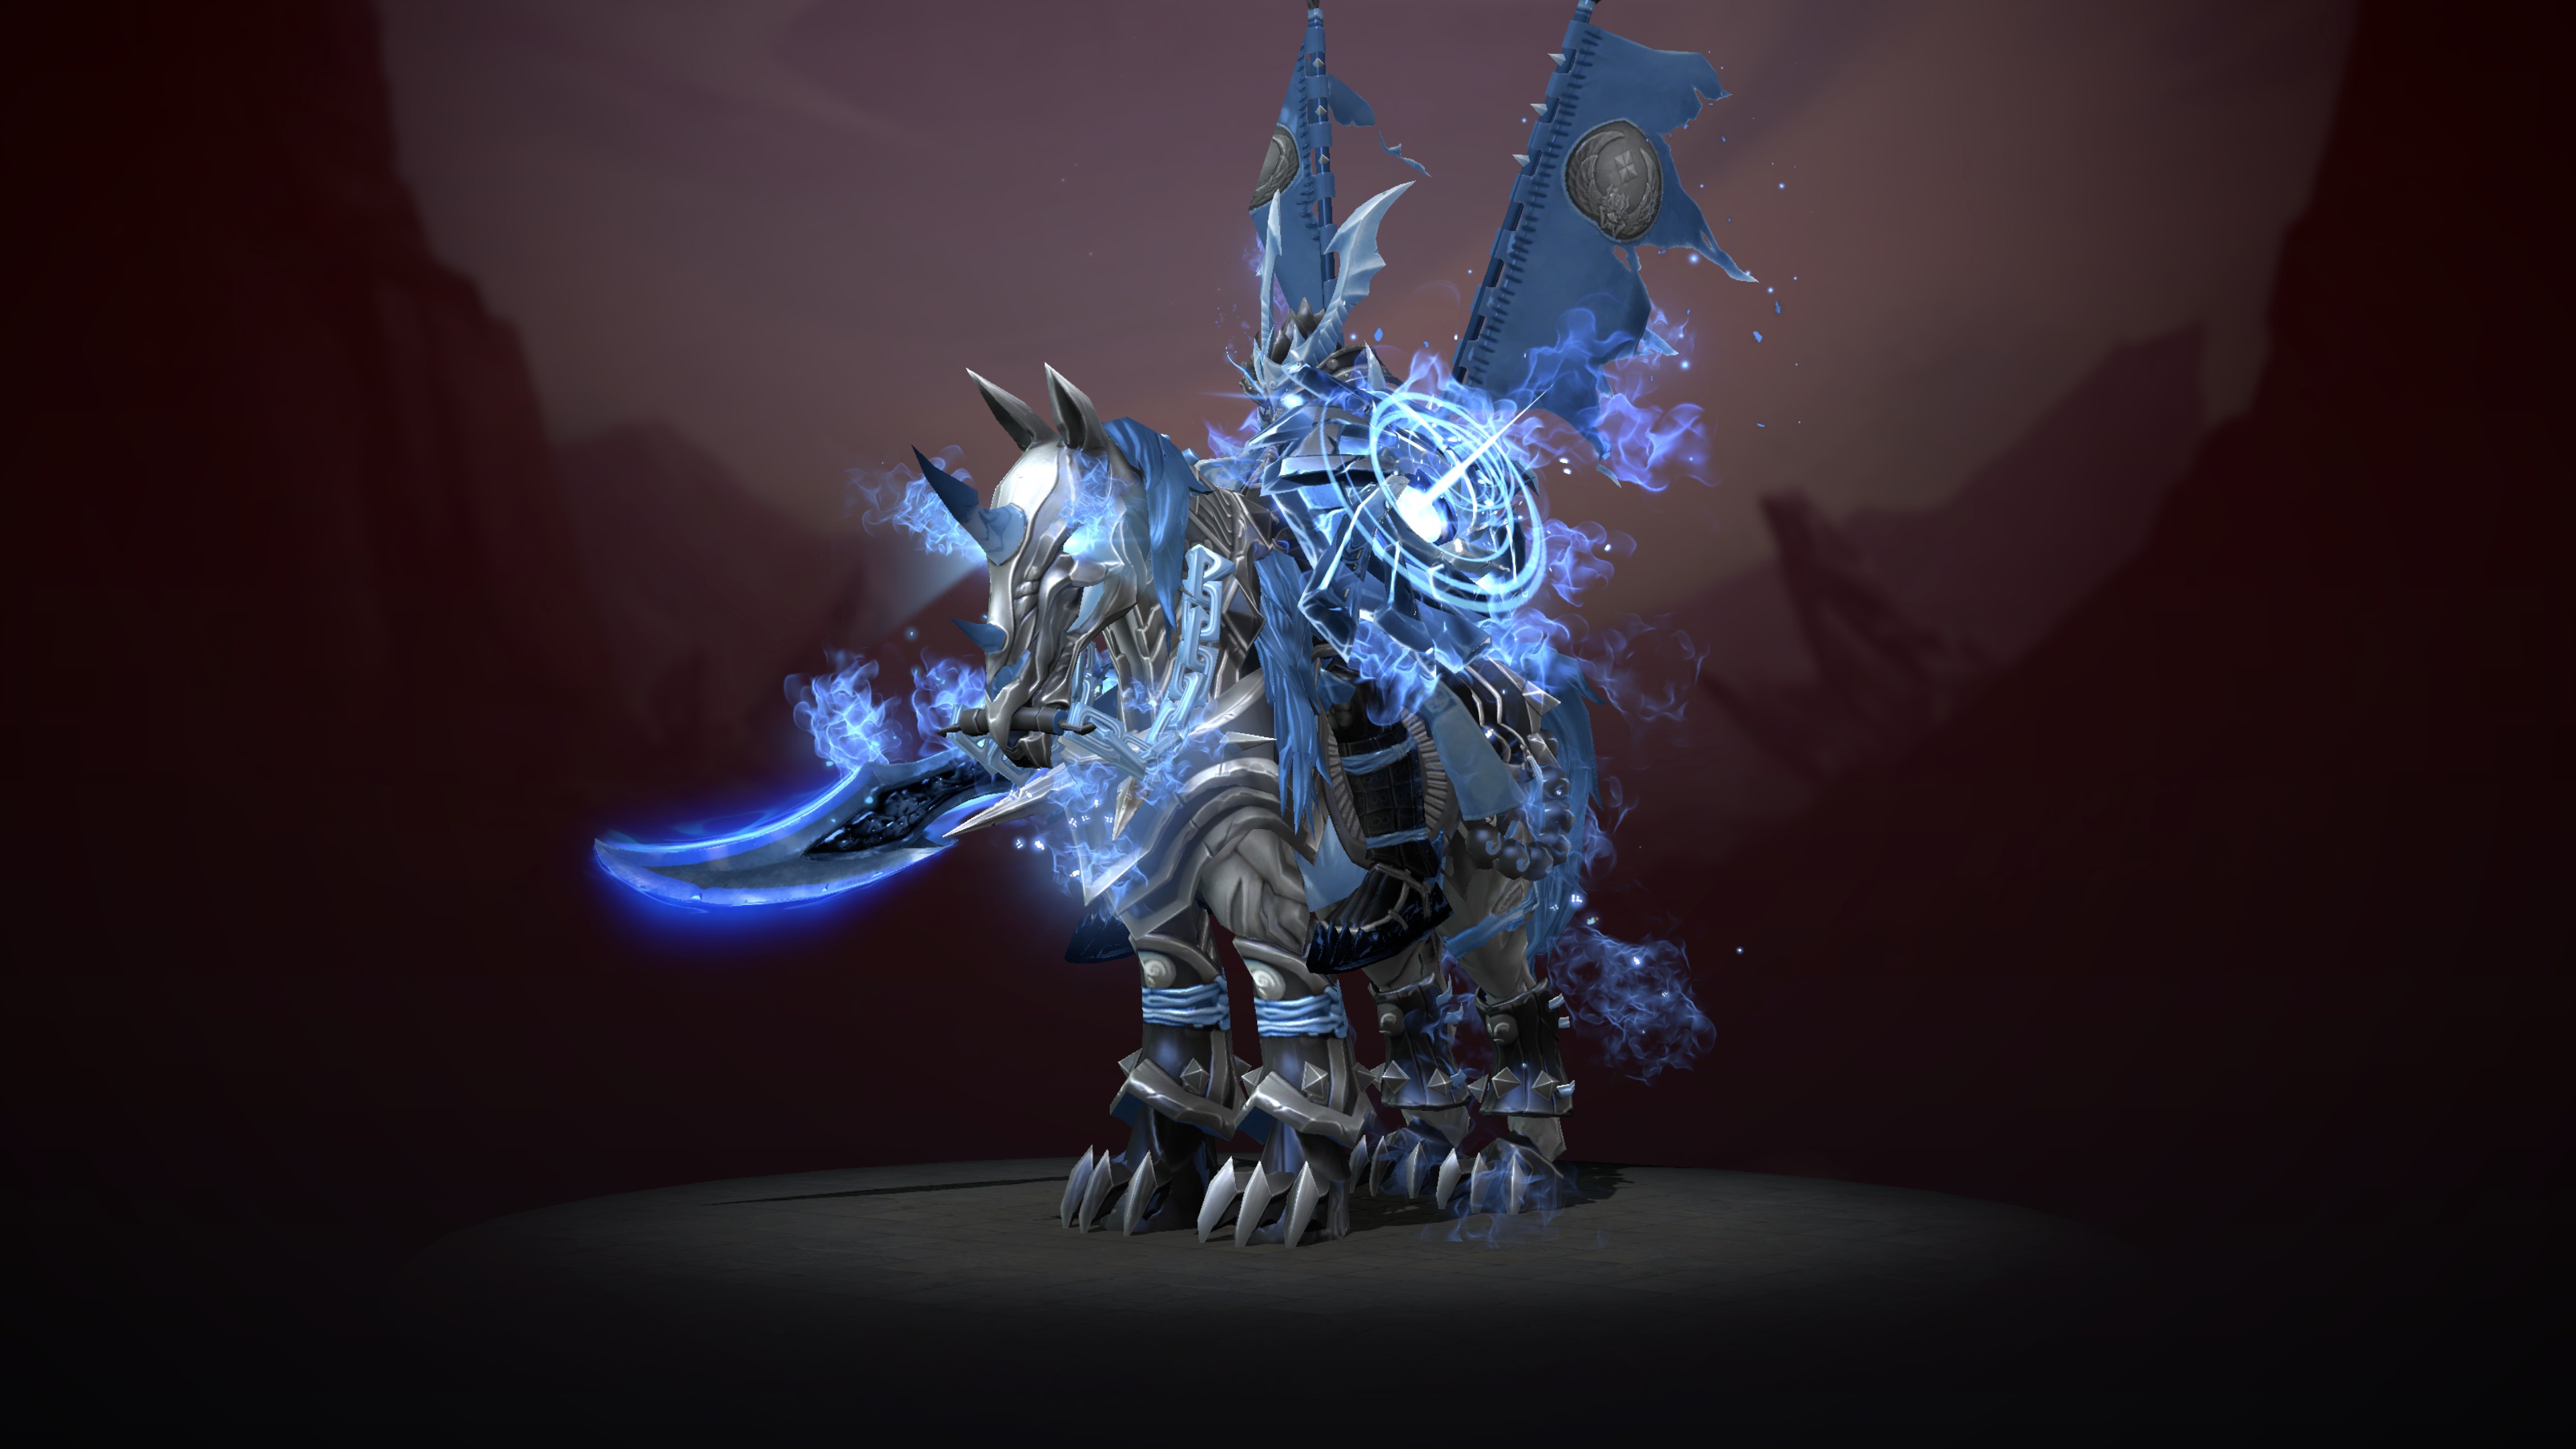 Chaos knight - The Ice Knight Arthas